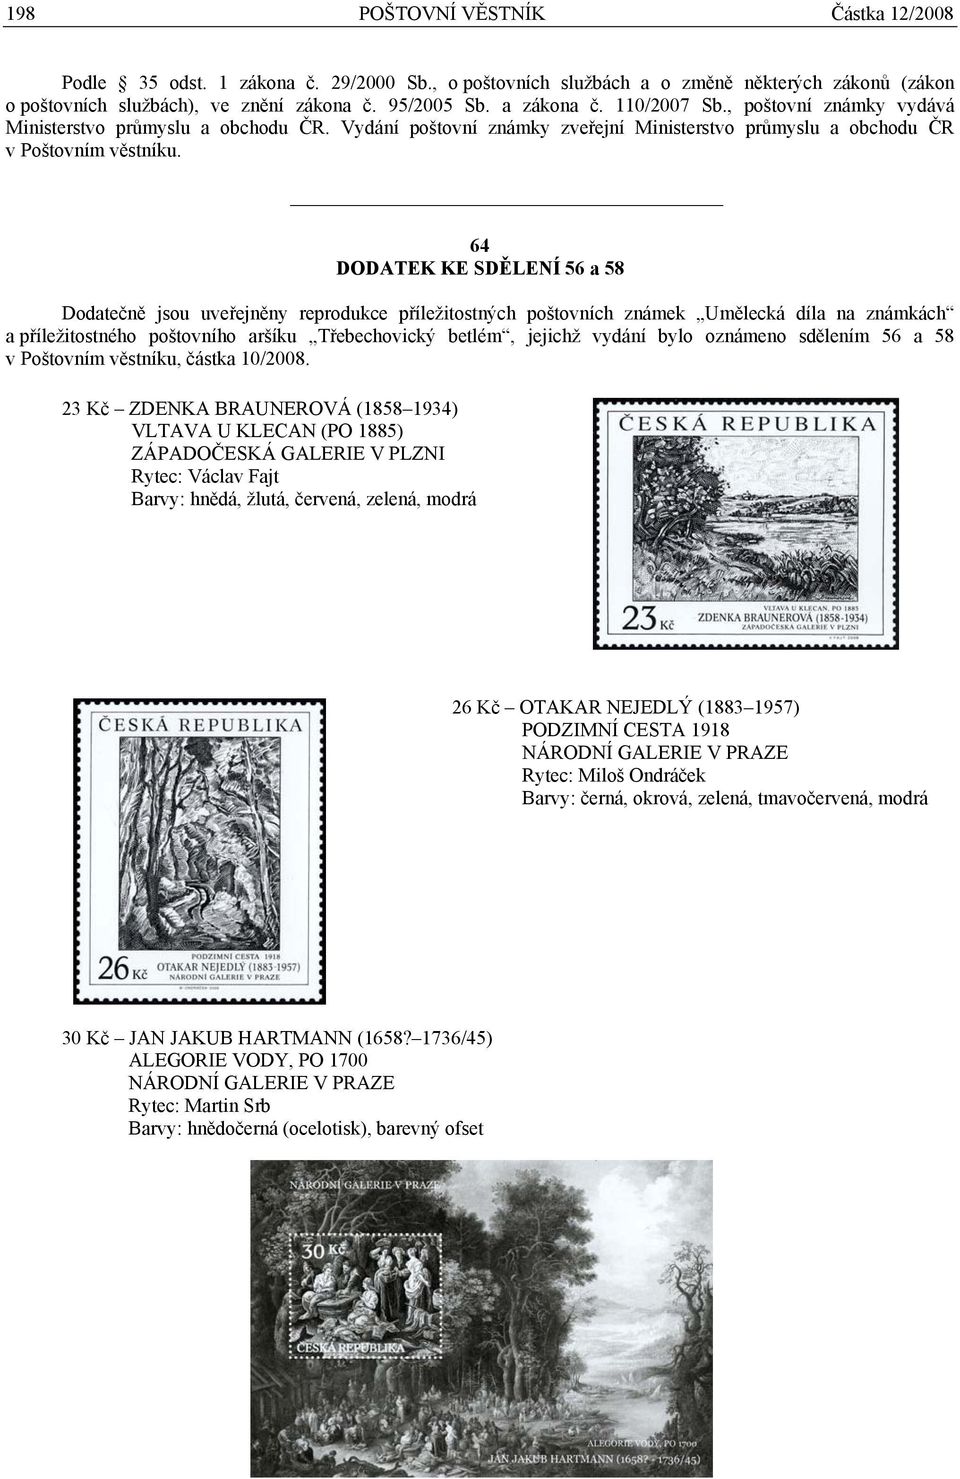 64 DODATEK KE SDĚLENÍ 56 a 58 Dodatečně jsou uveřejněny reprodukce příležitostných poštovních známek Umělecká díla na známkách a příležitostného poštovního aršíku Třebechovický betlém, jejichž vydání